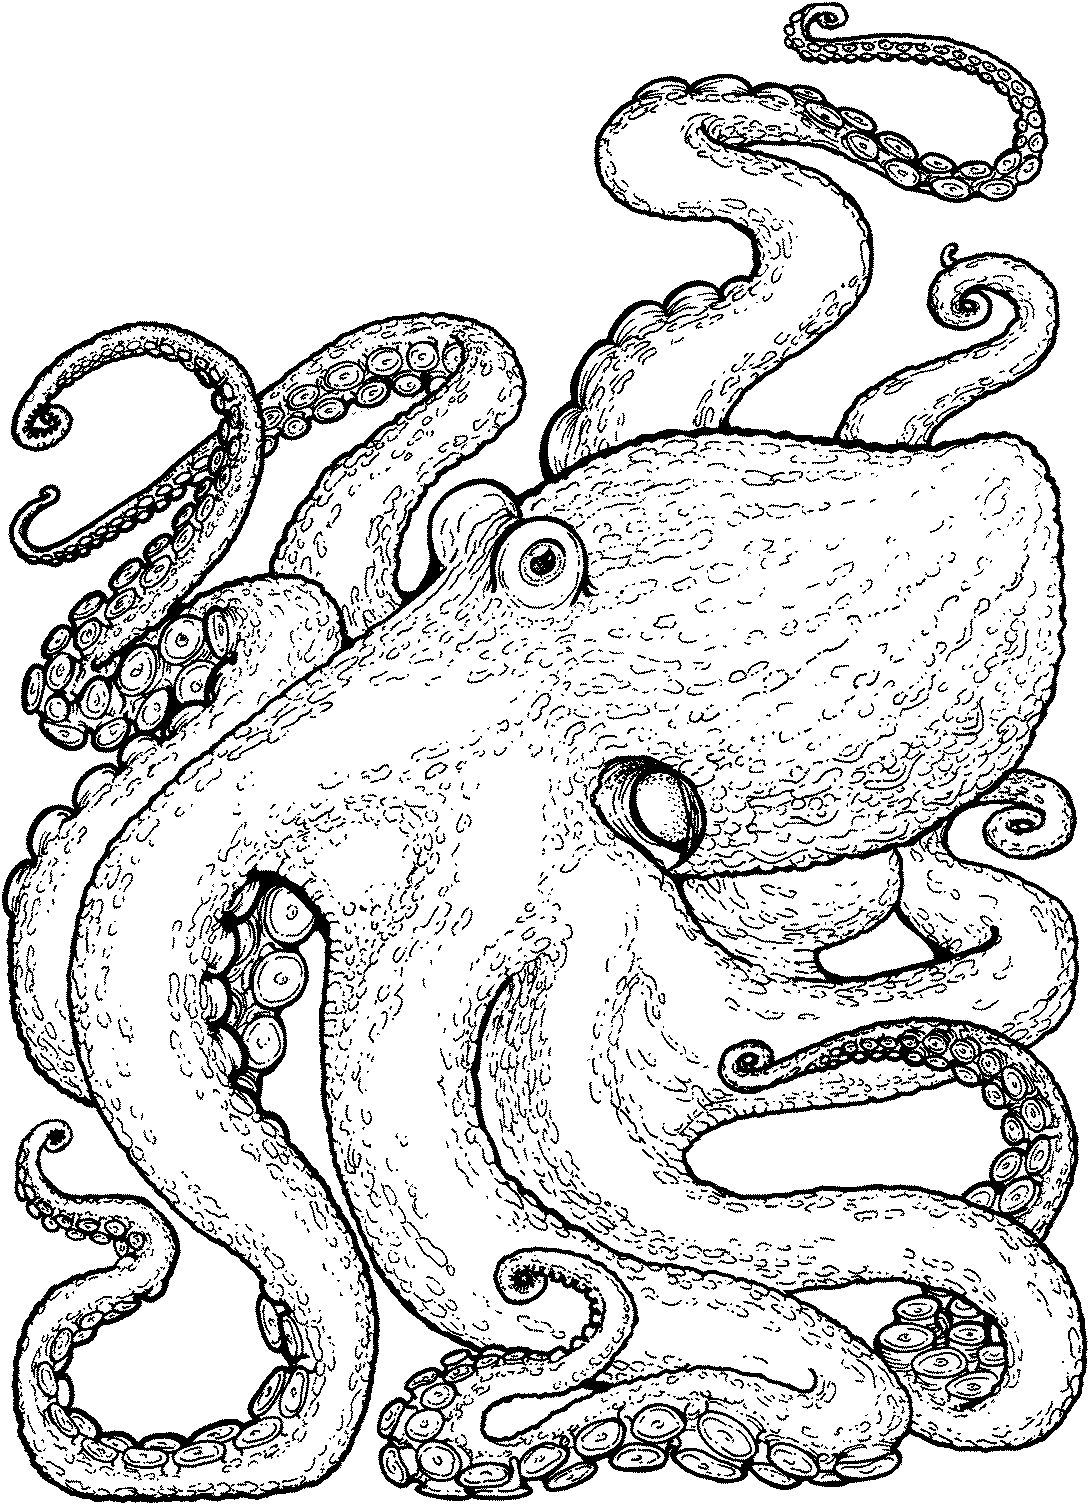 Контурное изображение осьминога